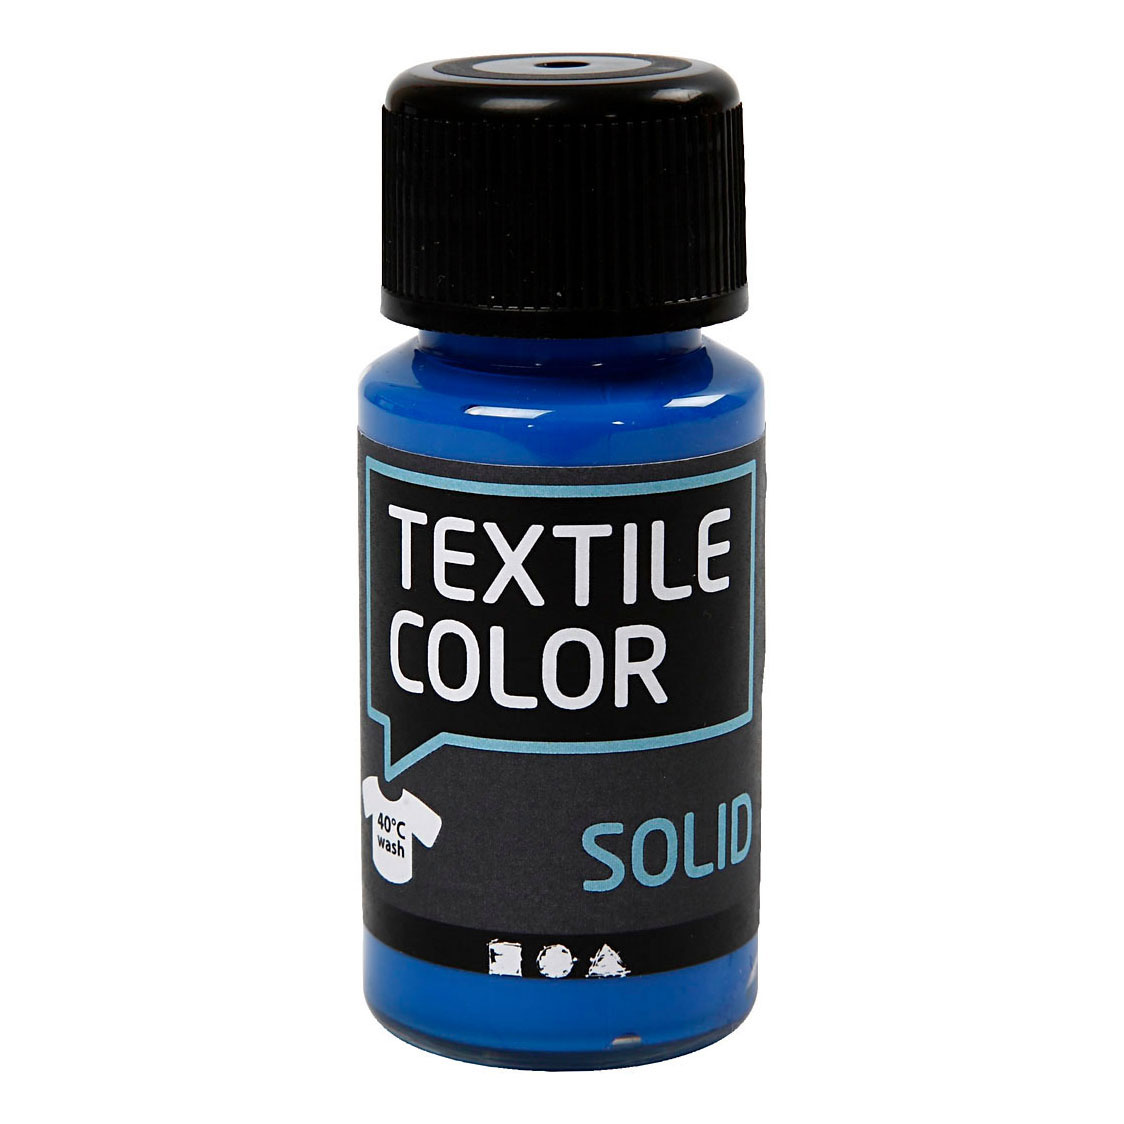 Textile Color Dekkende Textielverf - Briljant Blauw, 50ml